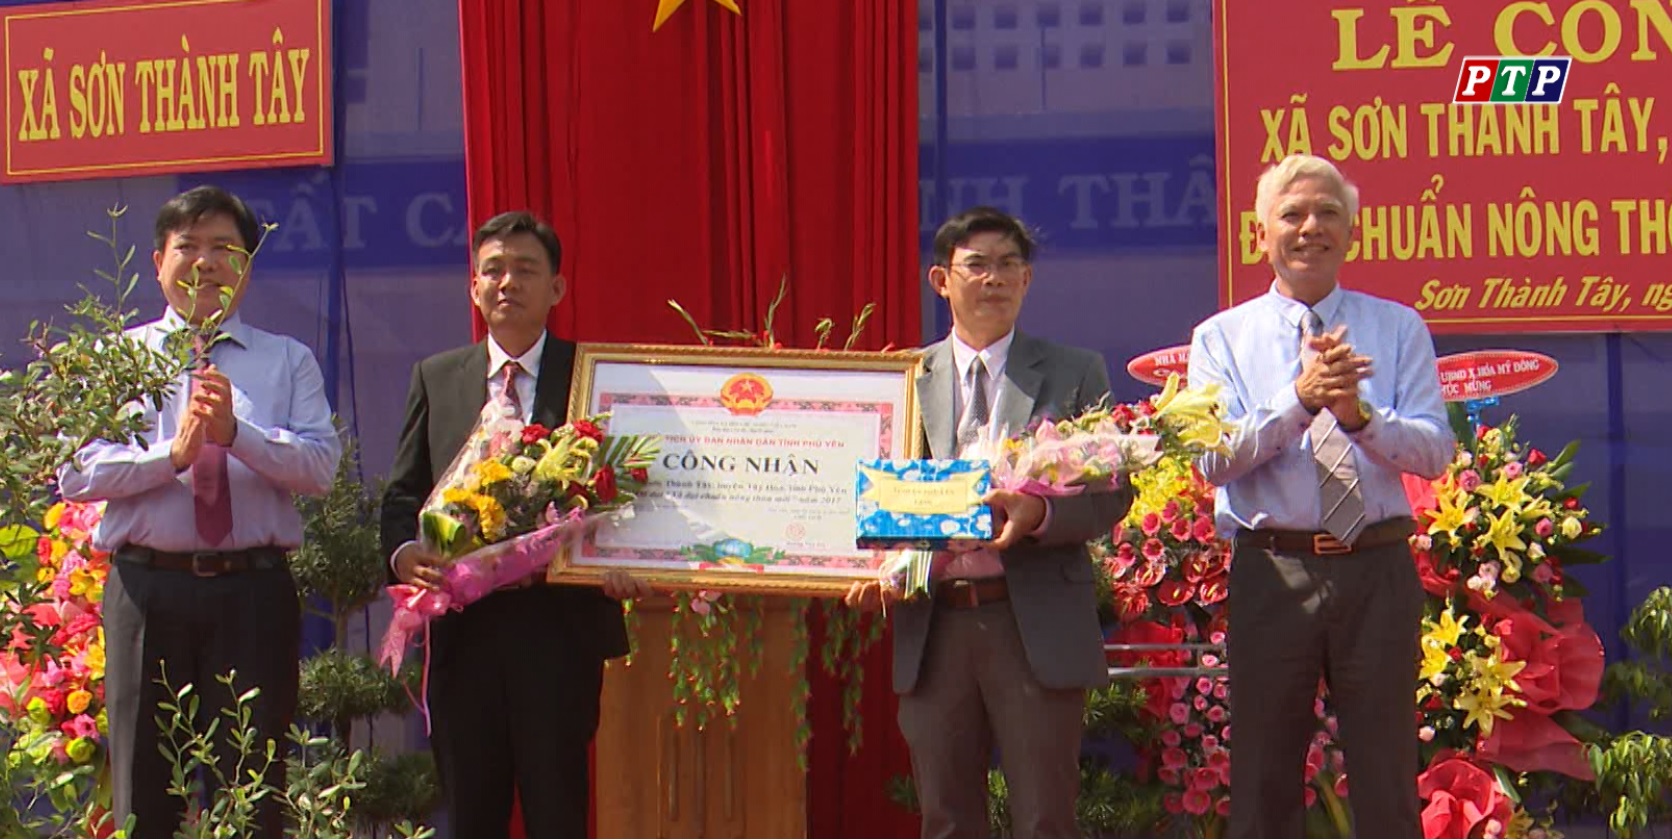 Xã Sơn Thành Tây đón nhận Bằng công nhận đạt chuẩn nông thôn mới năm 2017